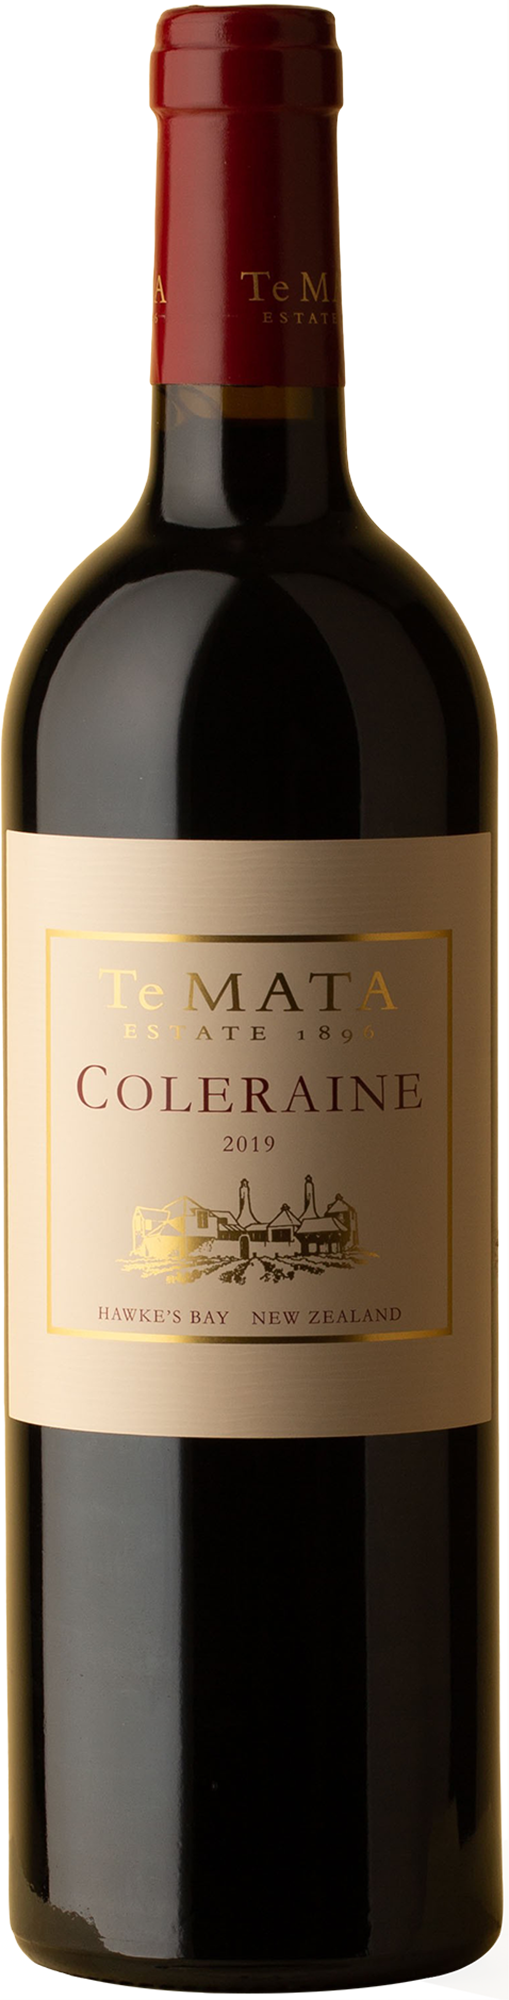 Te Mata - Coleraine Cabernet Merlot 2019 Red Wine